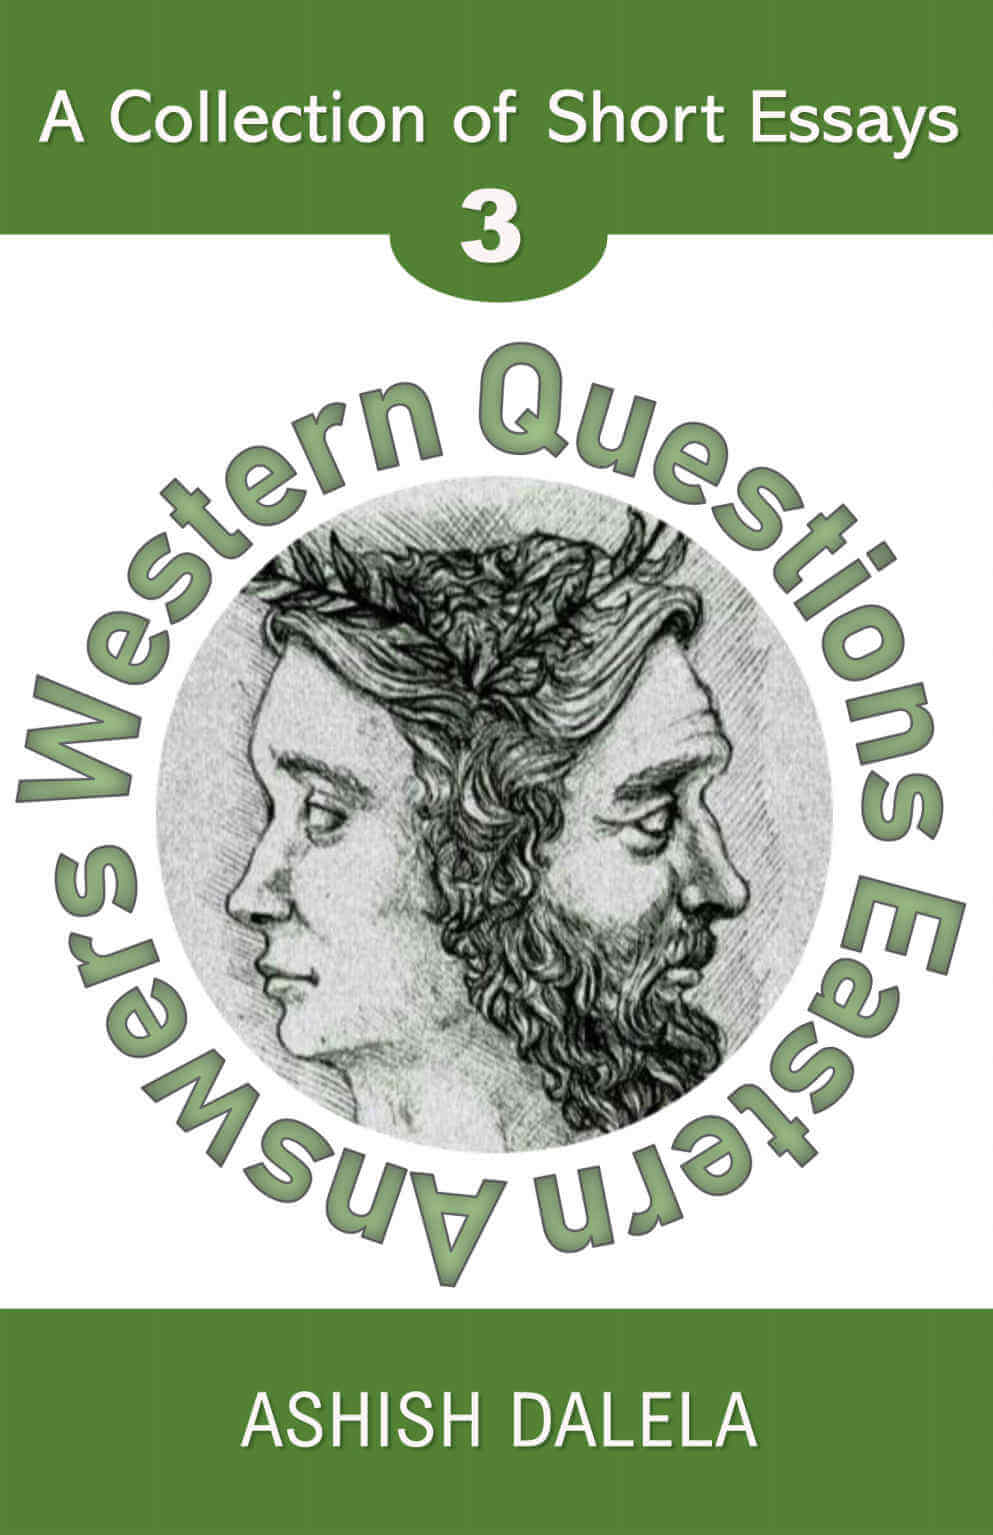 Preguntas occidentales Respuestas orientales: una colección de ensayos breves - Volumen 3